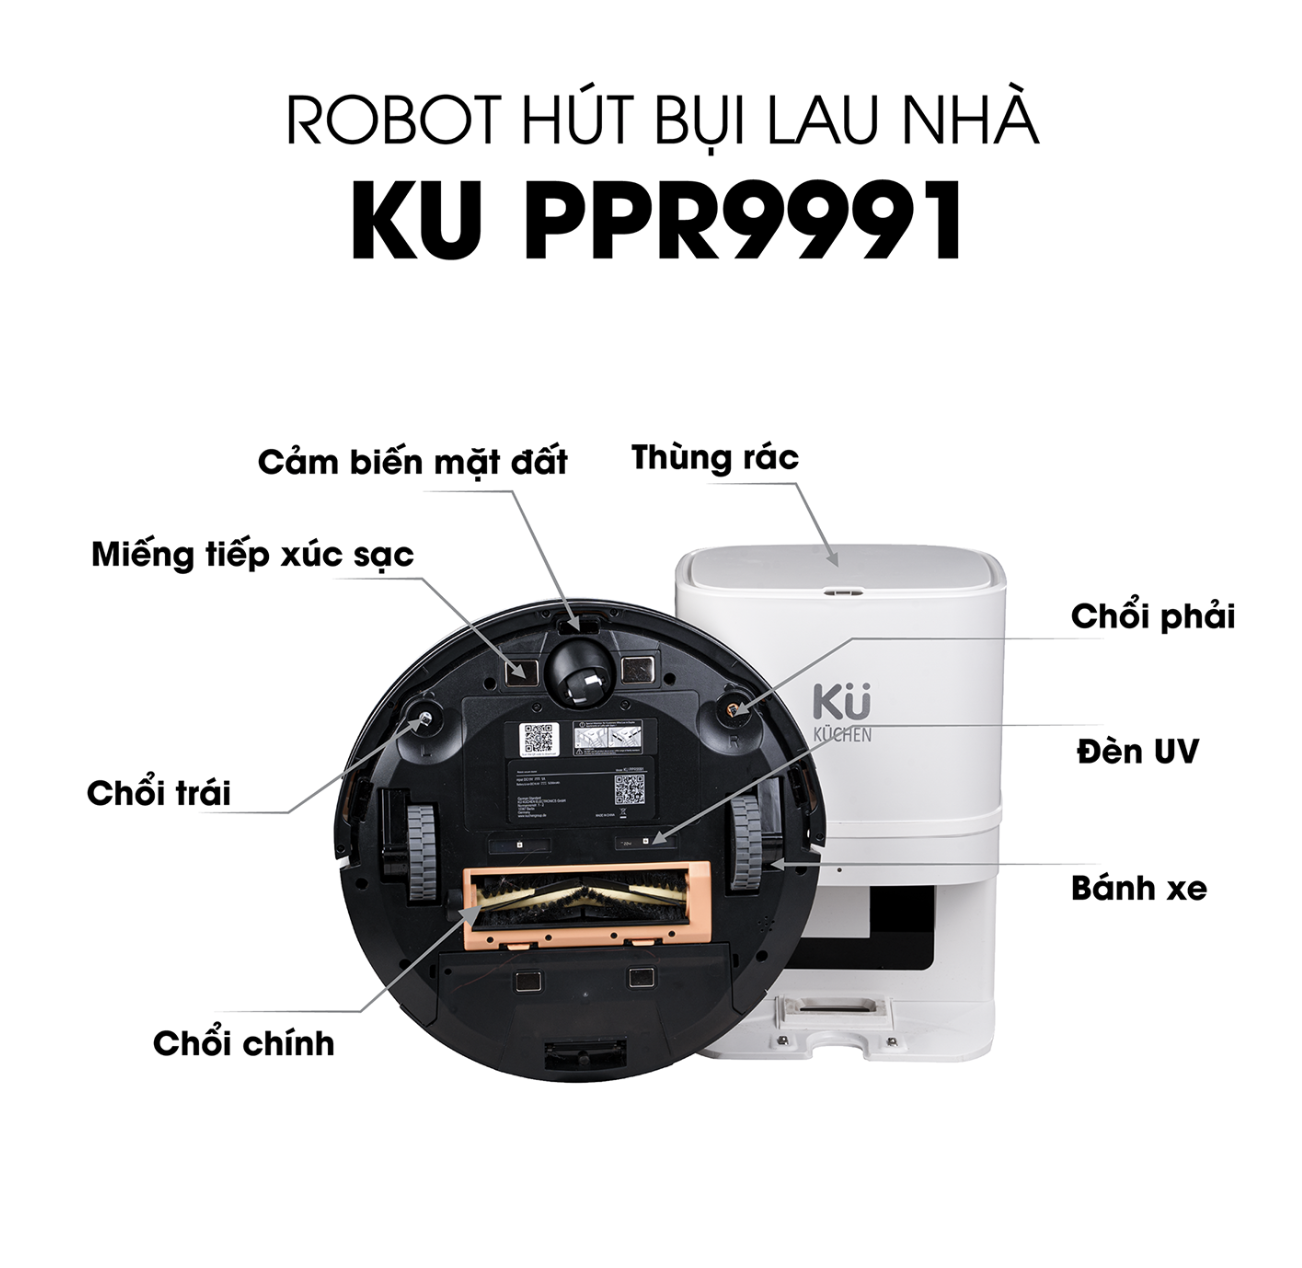 ROBOT HÚT BỤI LAU NHÀ KUCHEN - PPR 9991 - Hàng Chính Hãng